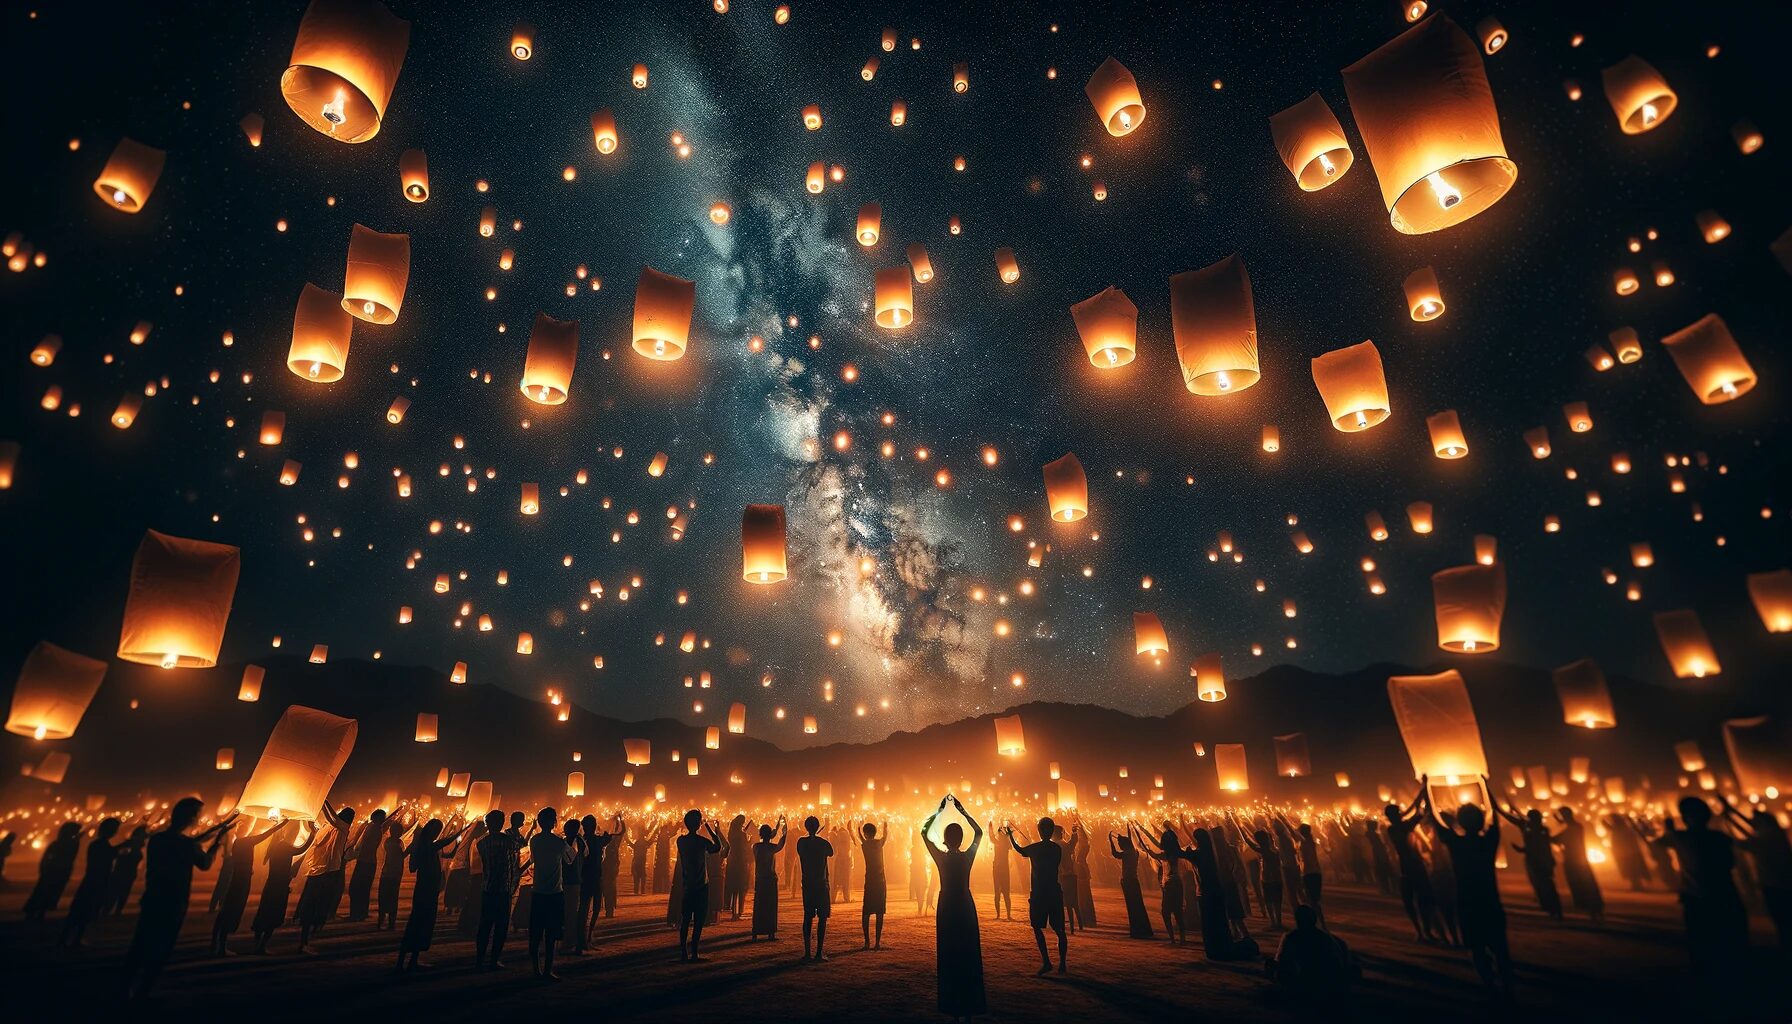 タイ・夜空を彩るコムローイの祭典 - 無料写真素材